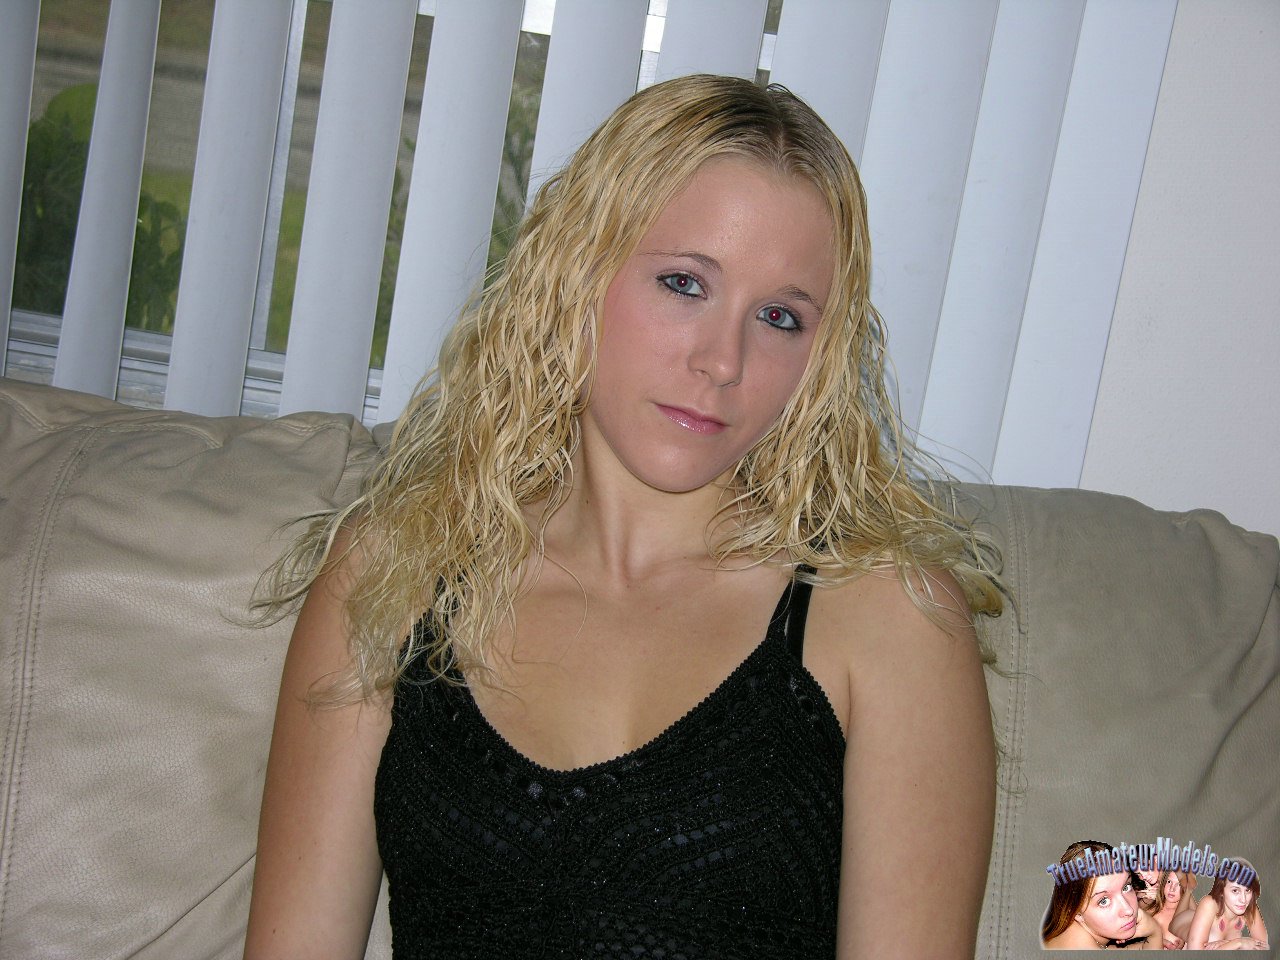 True Amateur Models Julie Blonde Amateur Teen With Pierced Tounge - Julie 161834 pic picture